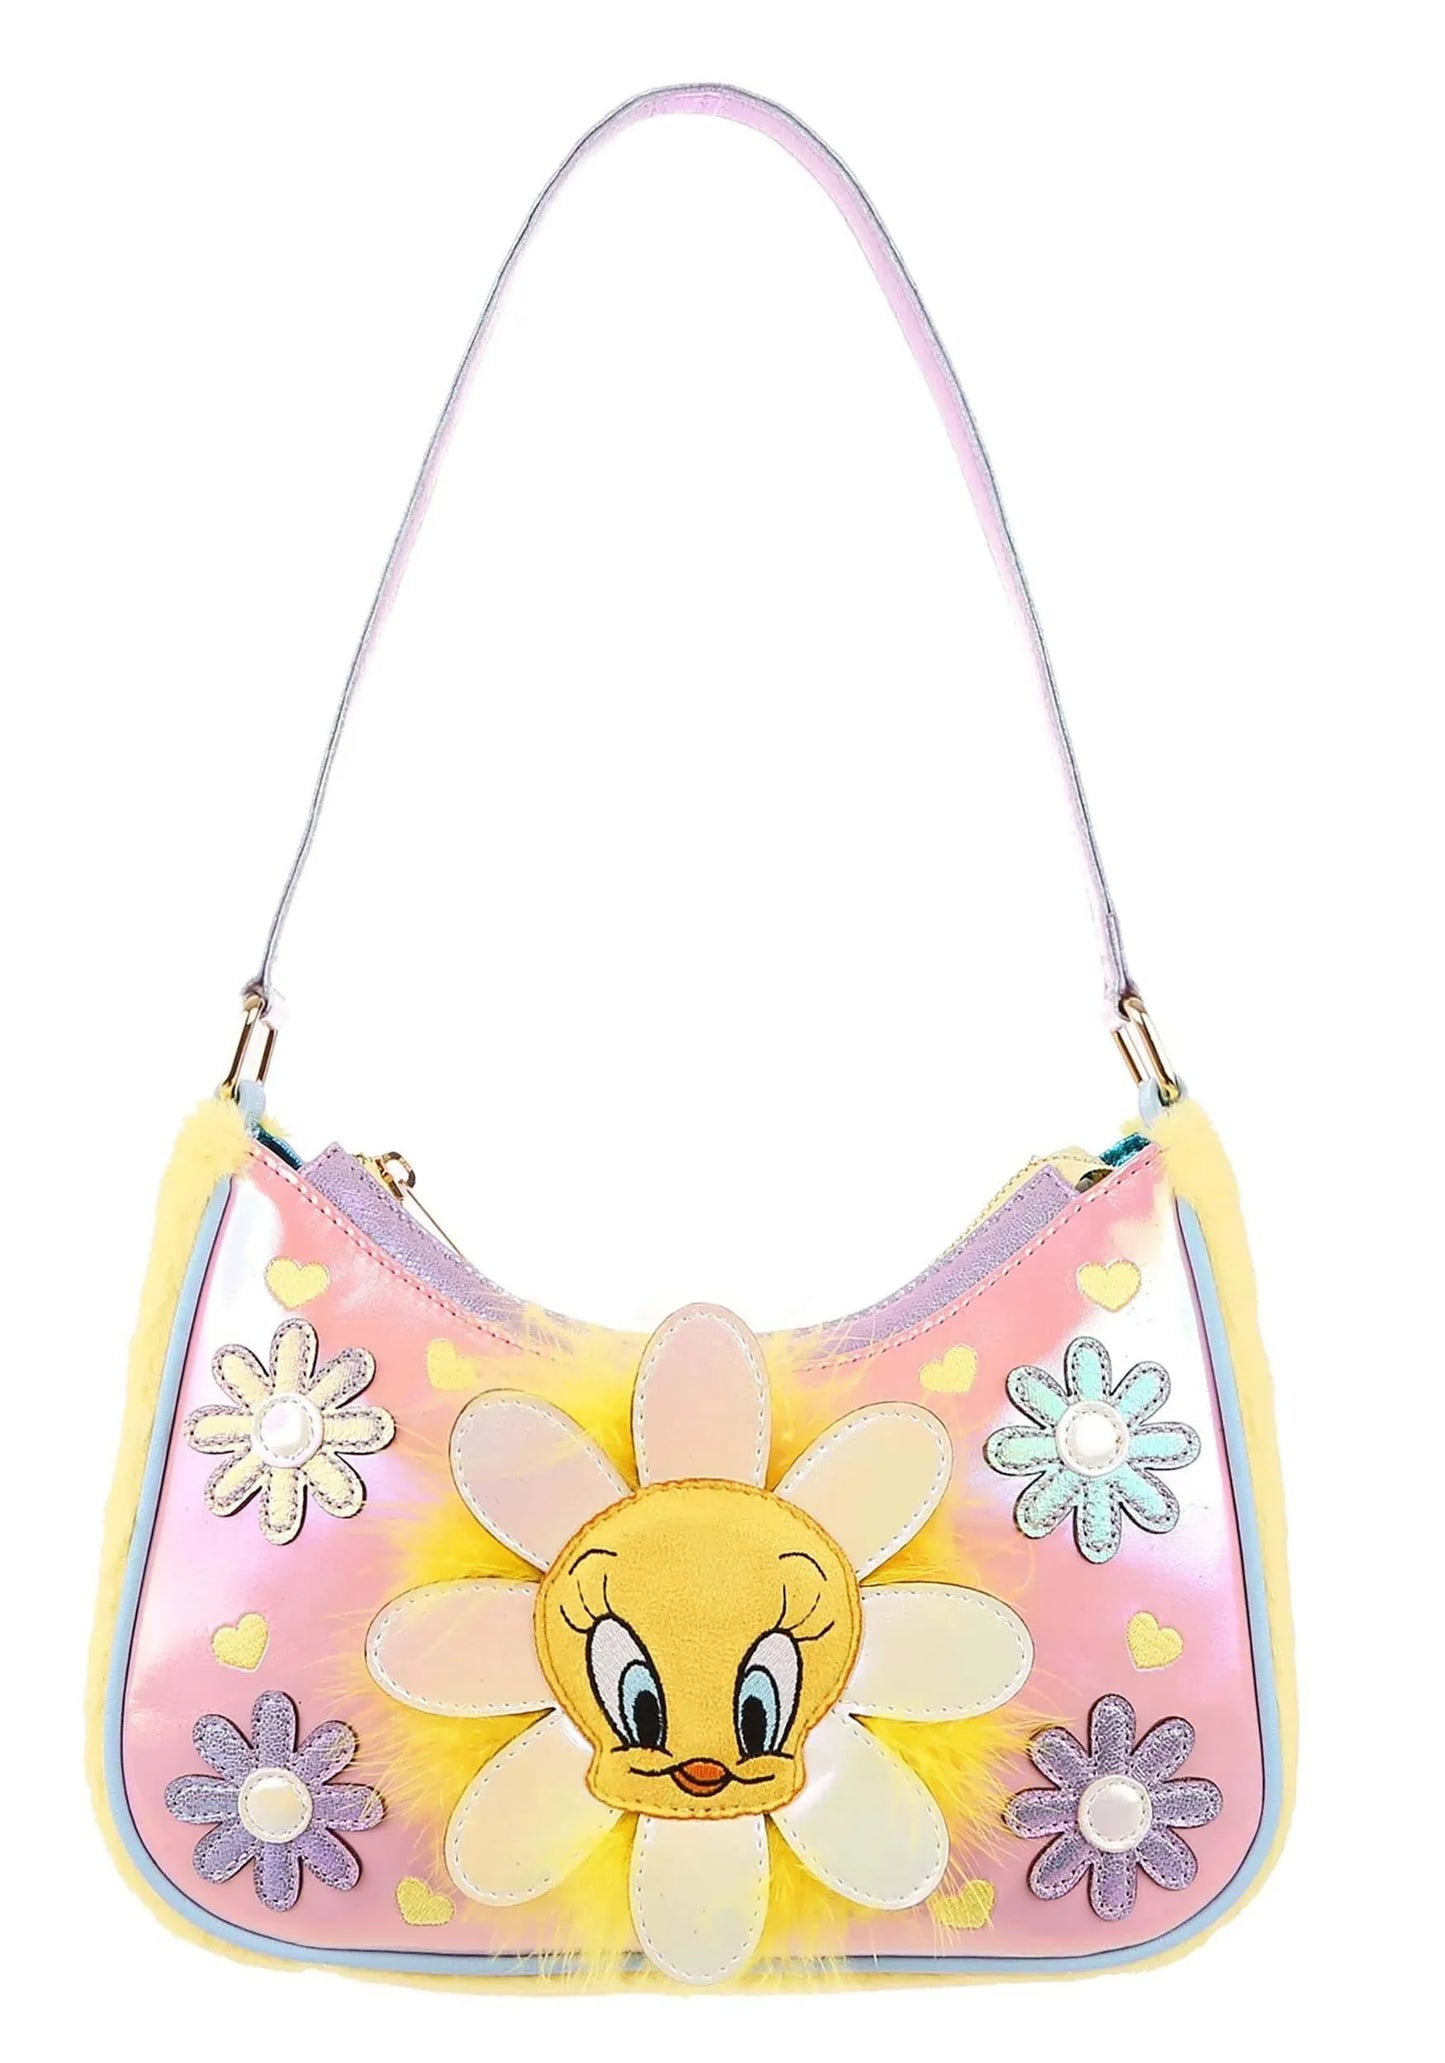 Irregular choice handbag tweety bloom bag £49.99 free uk postage